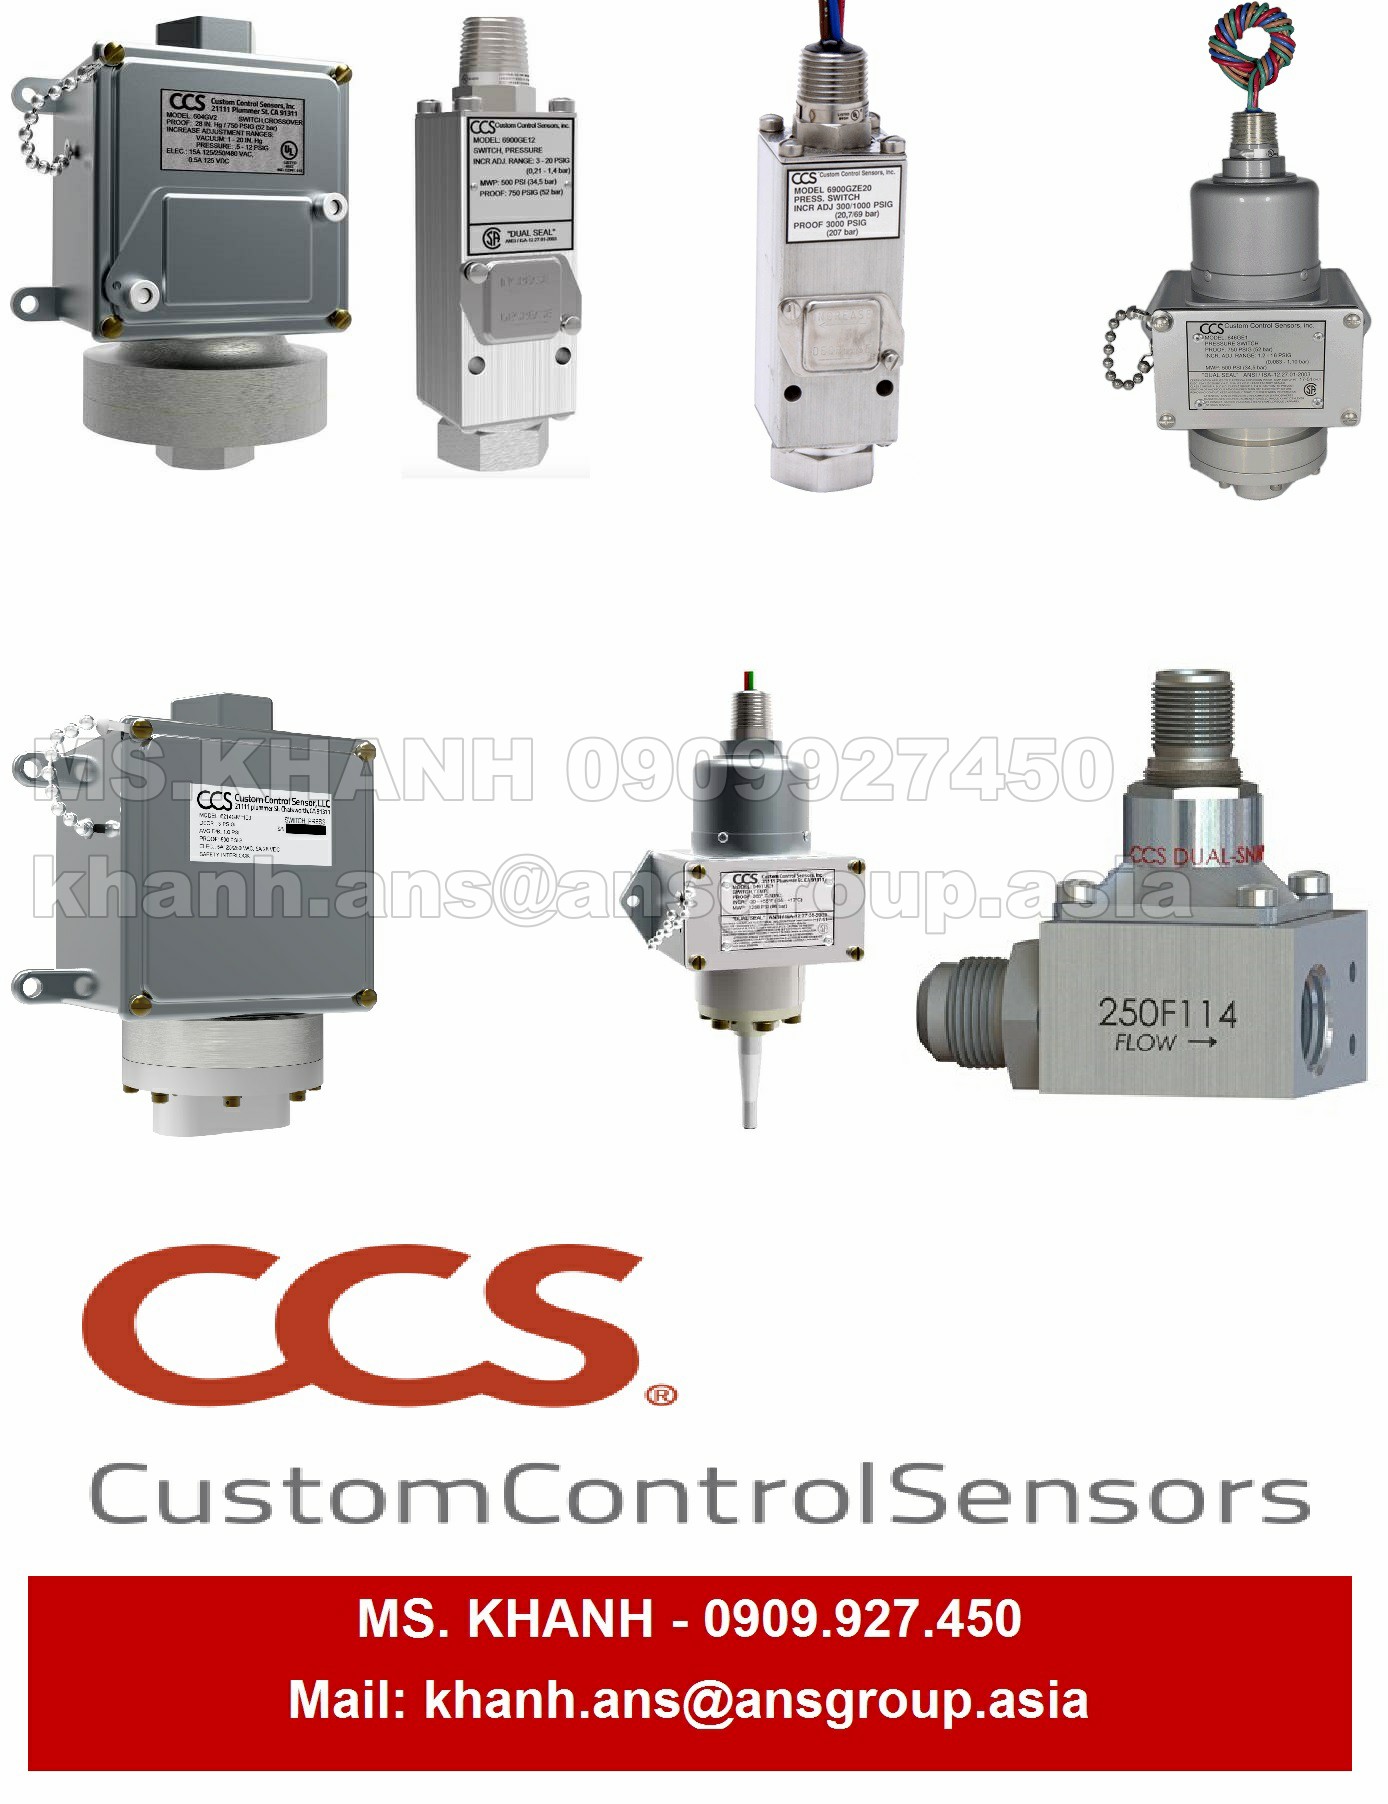 cam-bien-ap-suat-ccs-604gzm2-7011-pressure-sensor.png